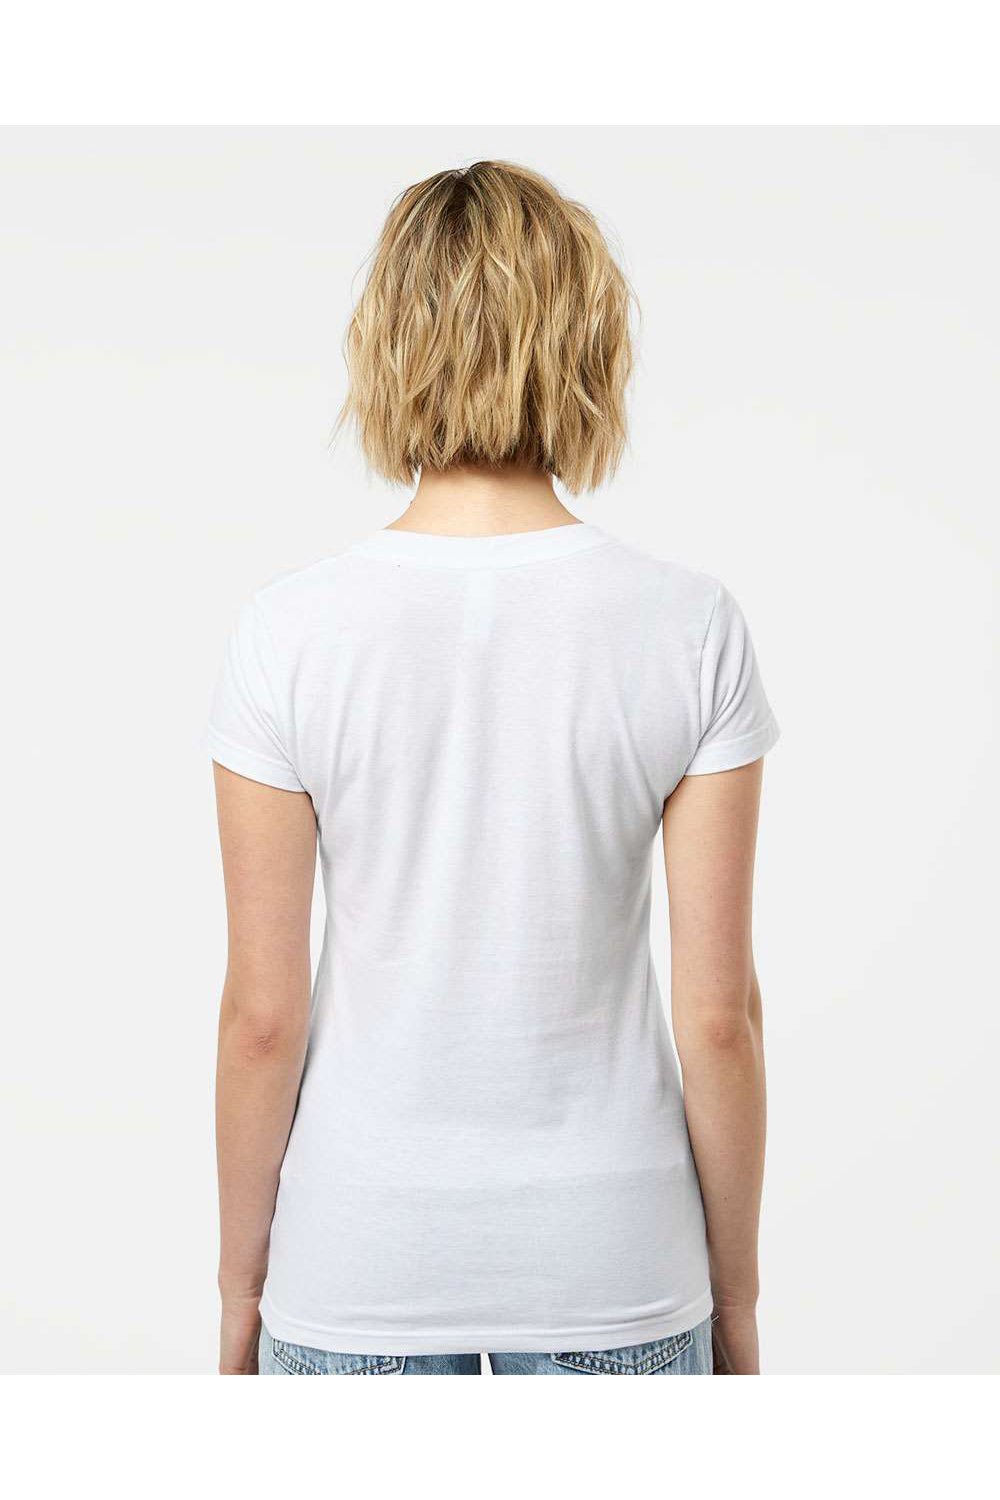 Tultex 214 Womens Fine Jersey Short Sleeve V-Neck T-Shirt White Model Back